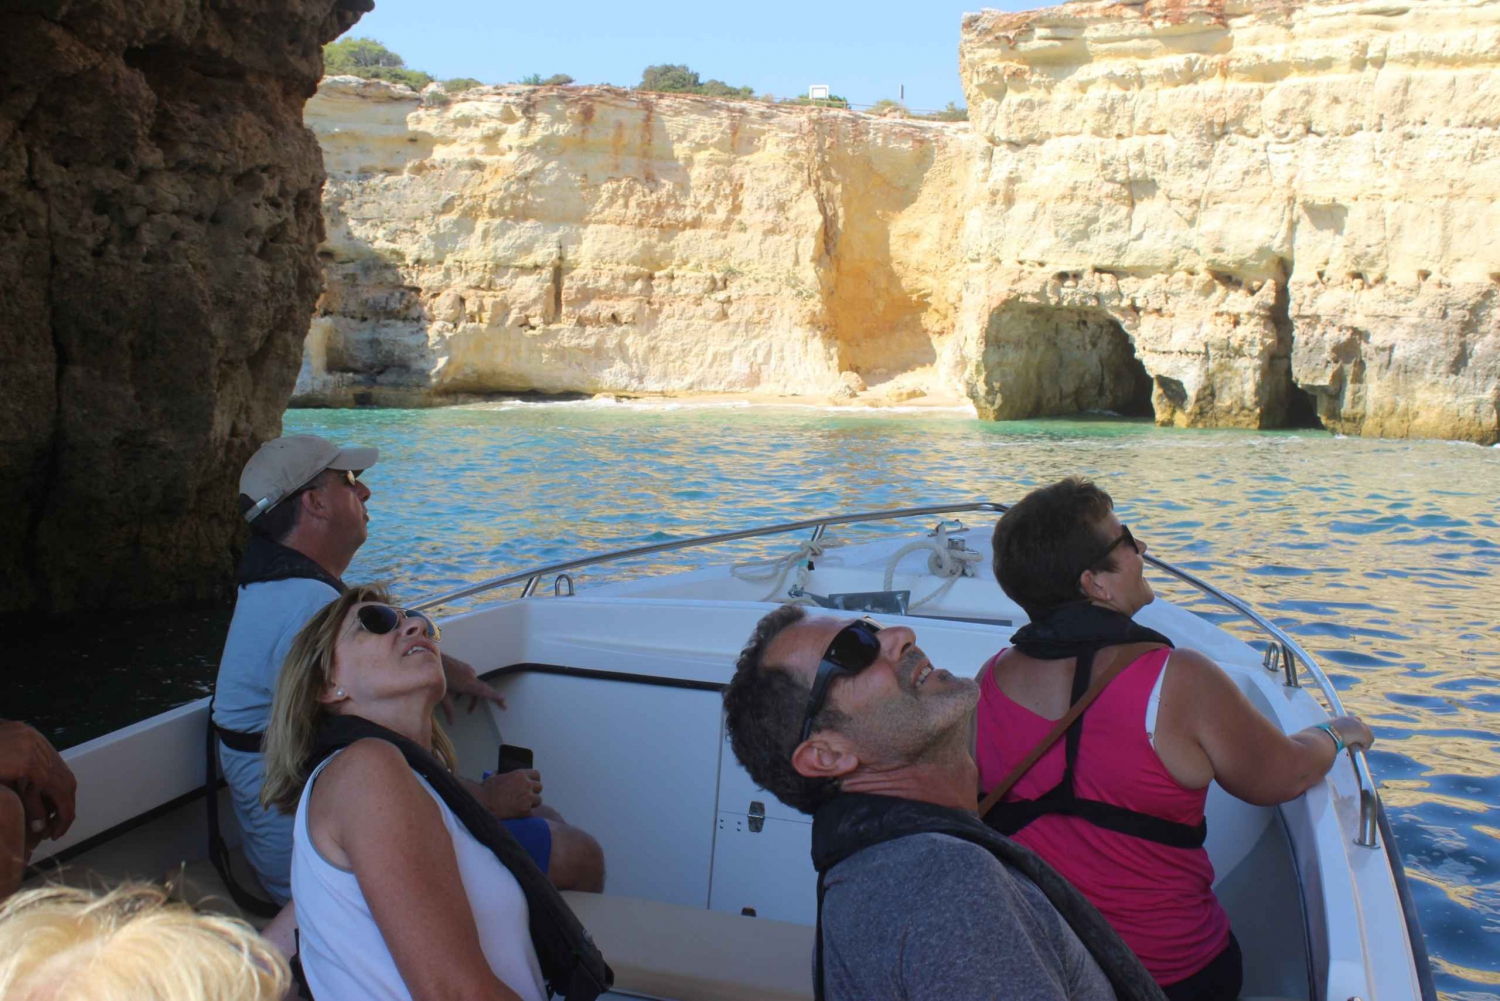 Armação de Pêra: Benagil and 10 Best Caves Guided Boat Tour